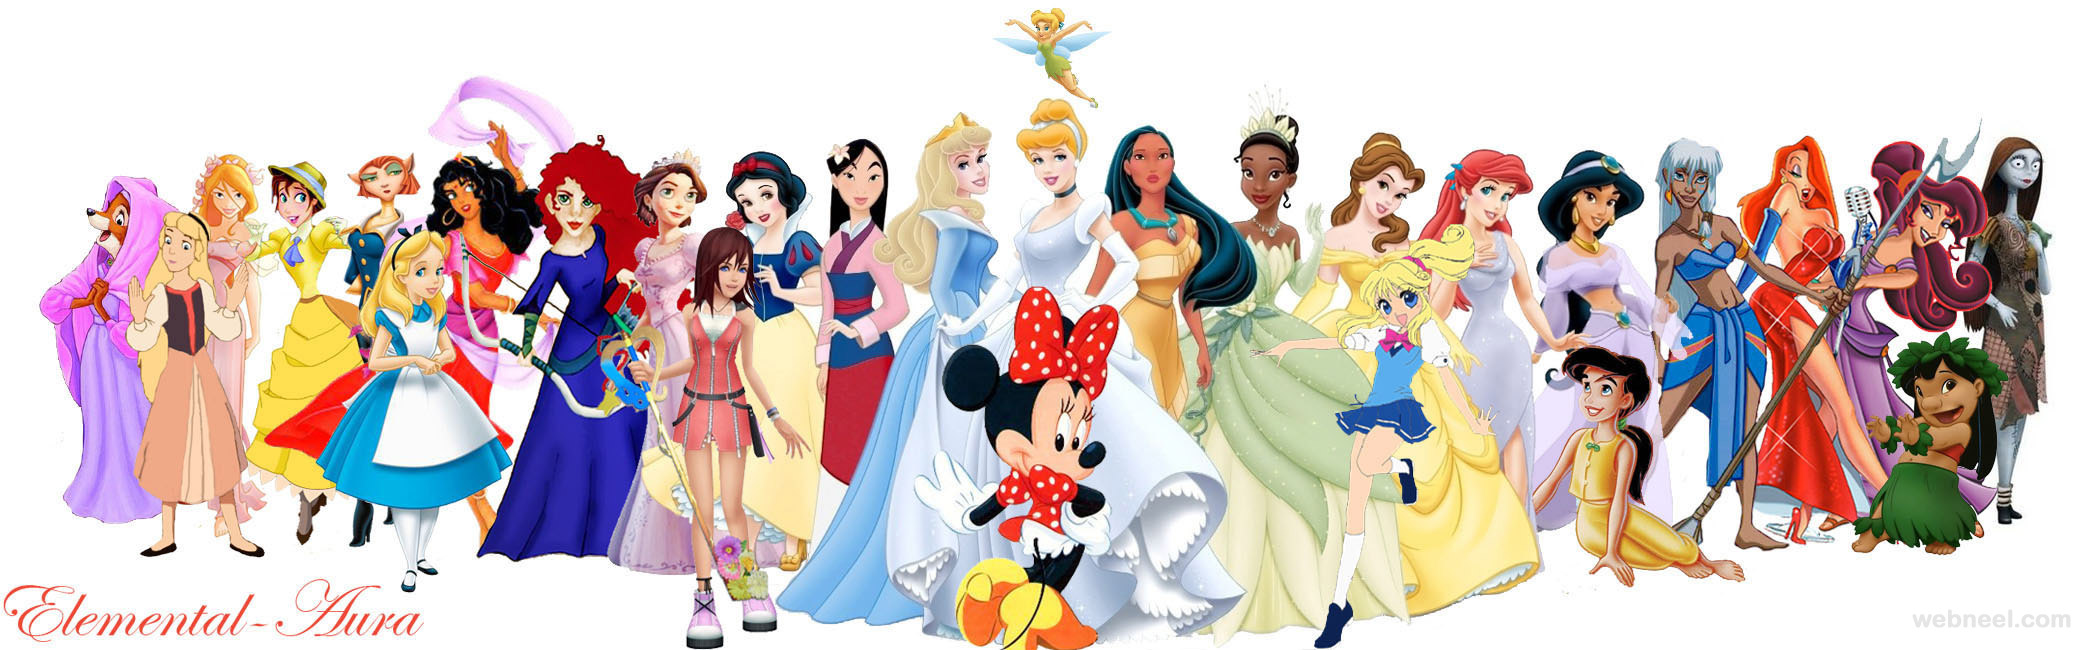 Disney Cartoon Characters 24 Full Image